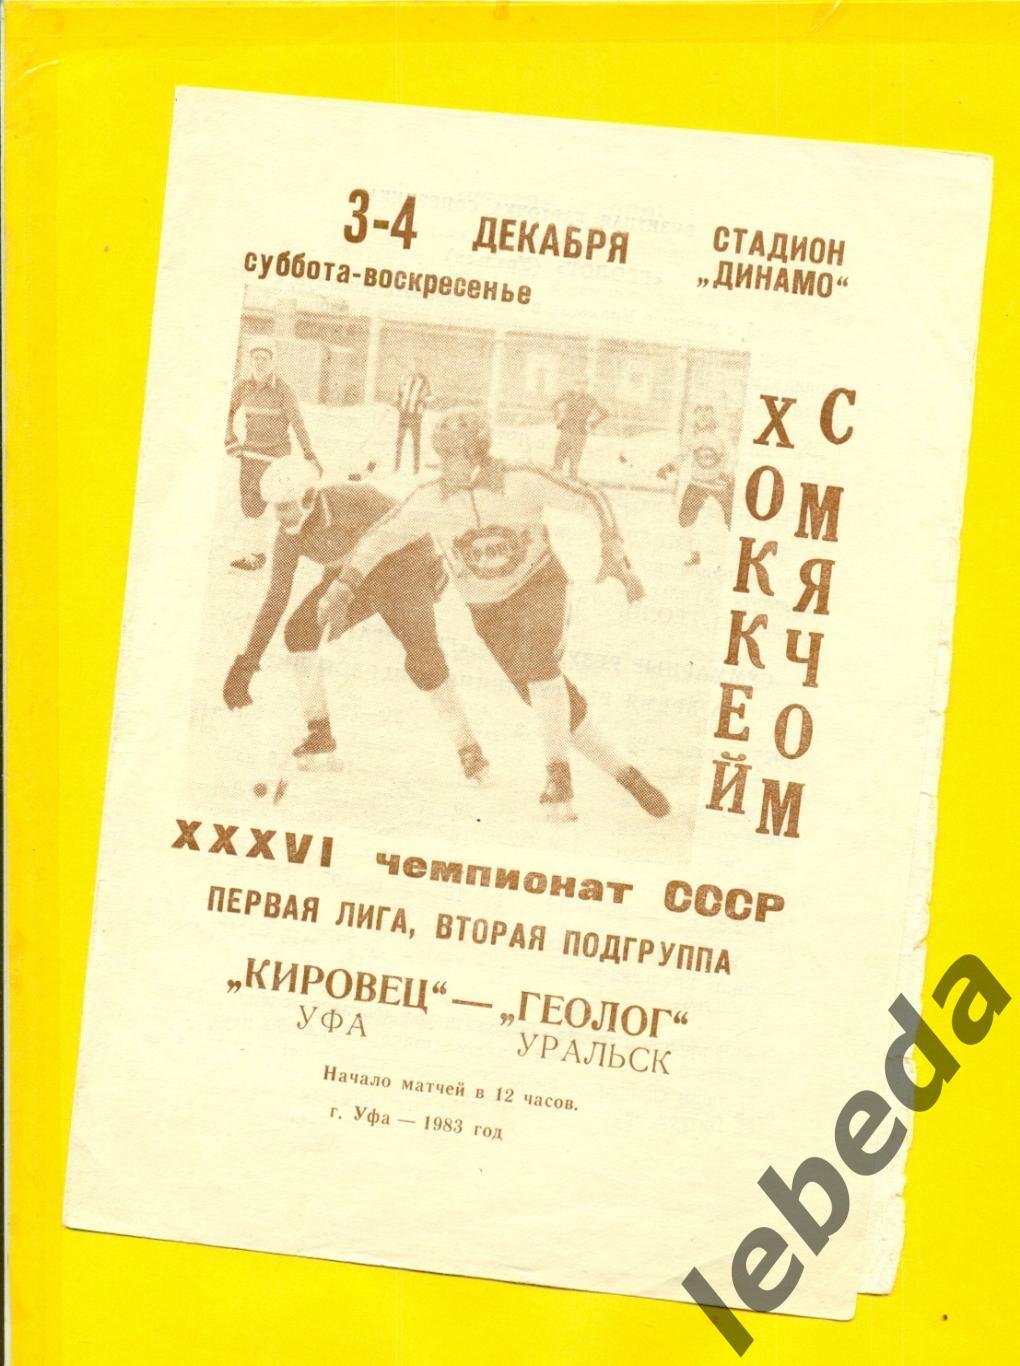 Кировец Уфа - Геолог Уральск - 1983 / 1984 г. (3-4.12.83.)